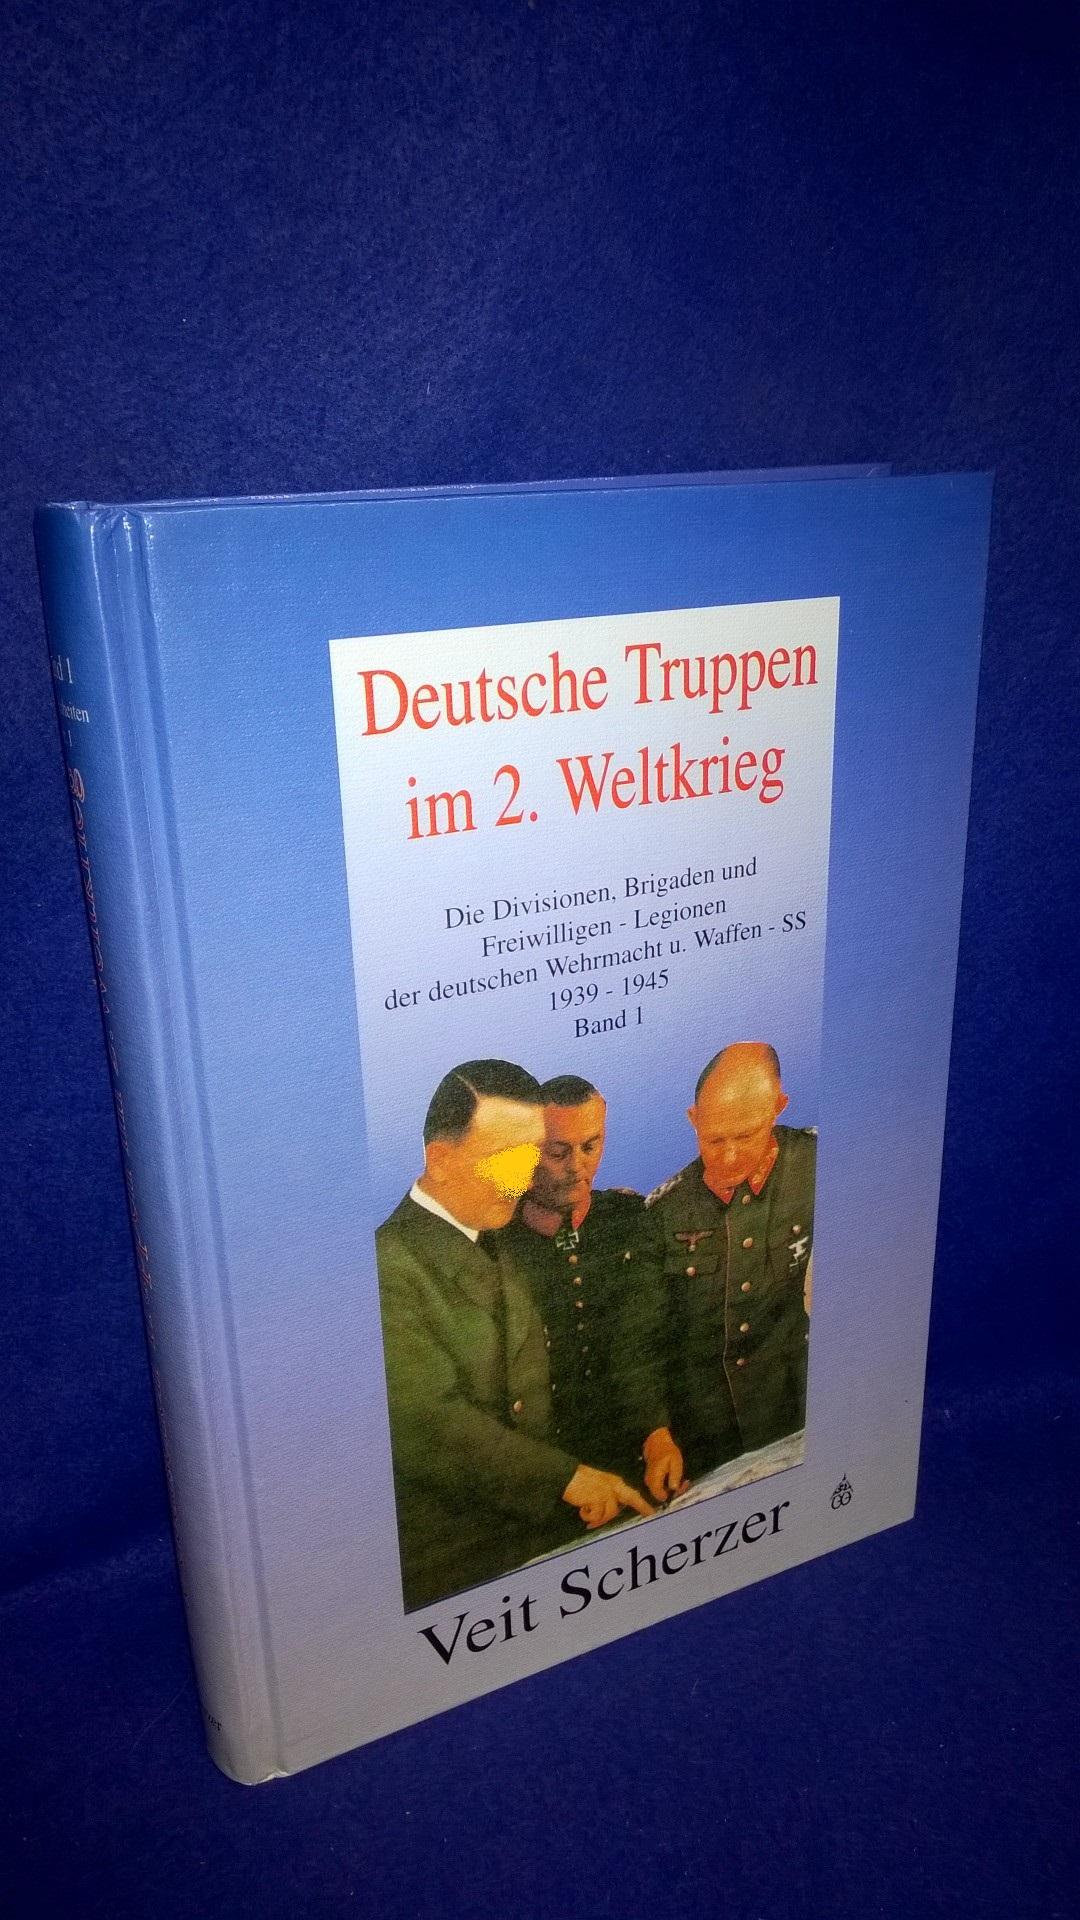 Deutsche Truppen im 2. Weltkrieg, Band 1: Die Divisionen, Brigaden und Freiwilligen-Legionen der deutschen Wehrmacht u. Waffen-SS 1939-1945.